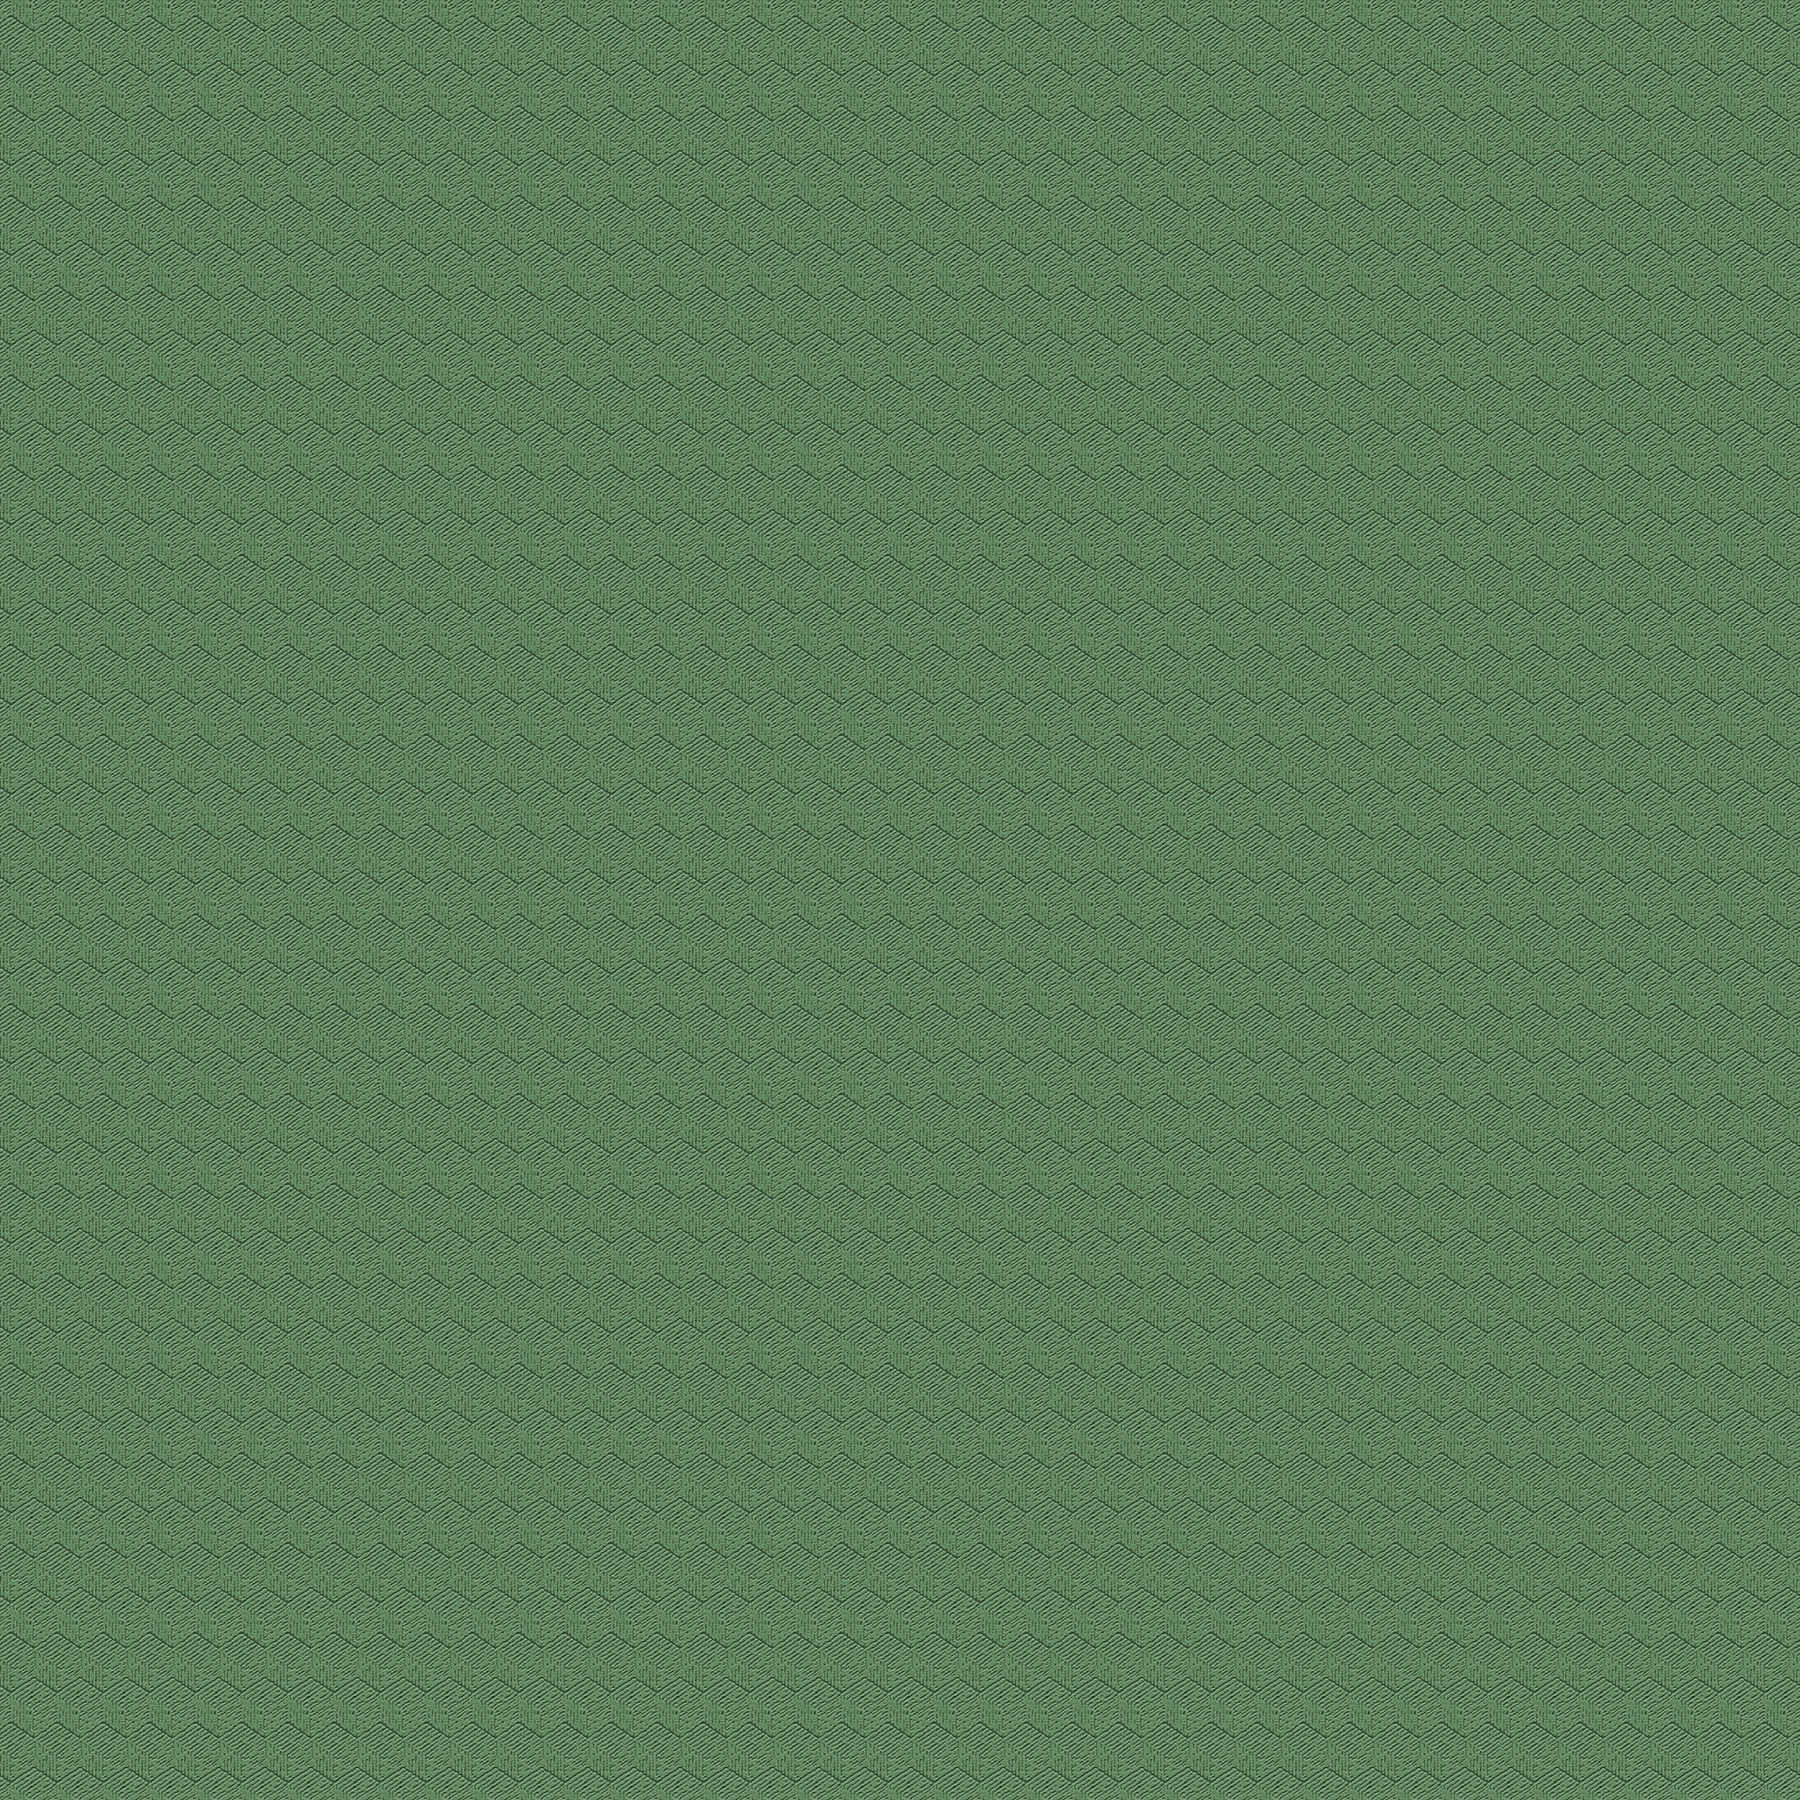         Tapete uni, strukturiert mit Zickzack-Design – Grün
    